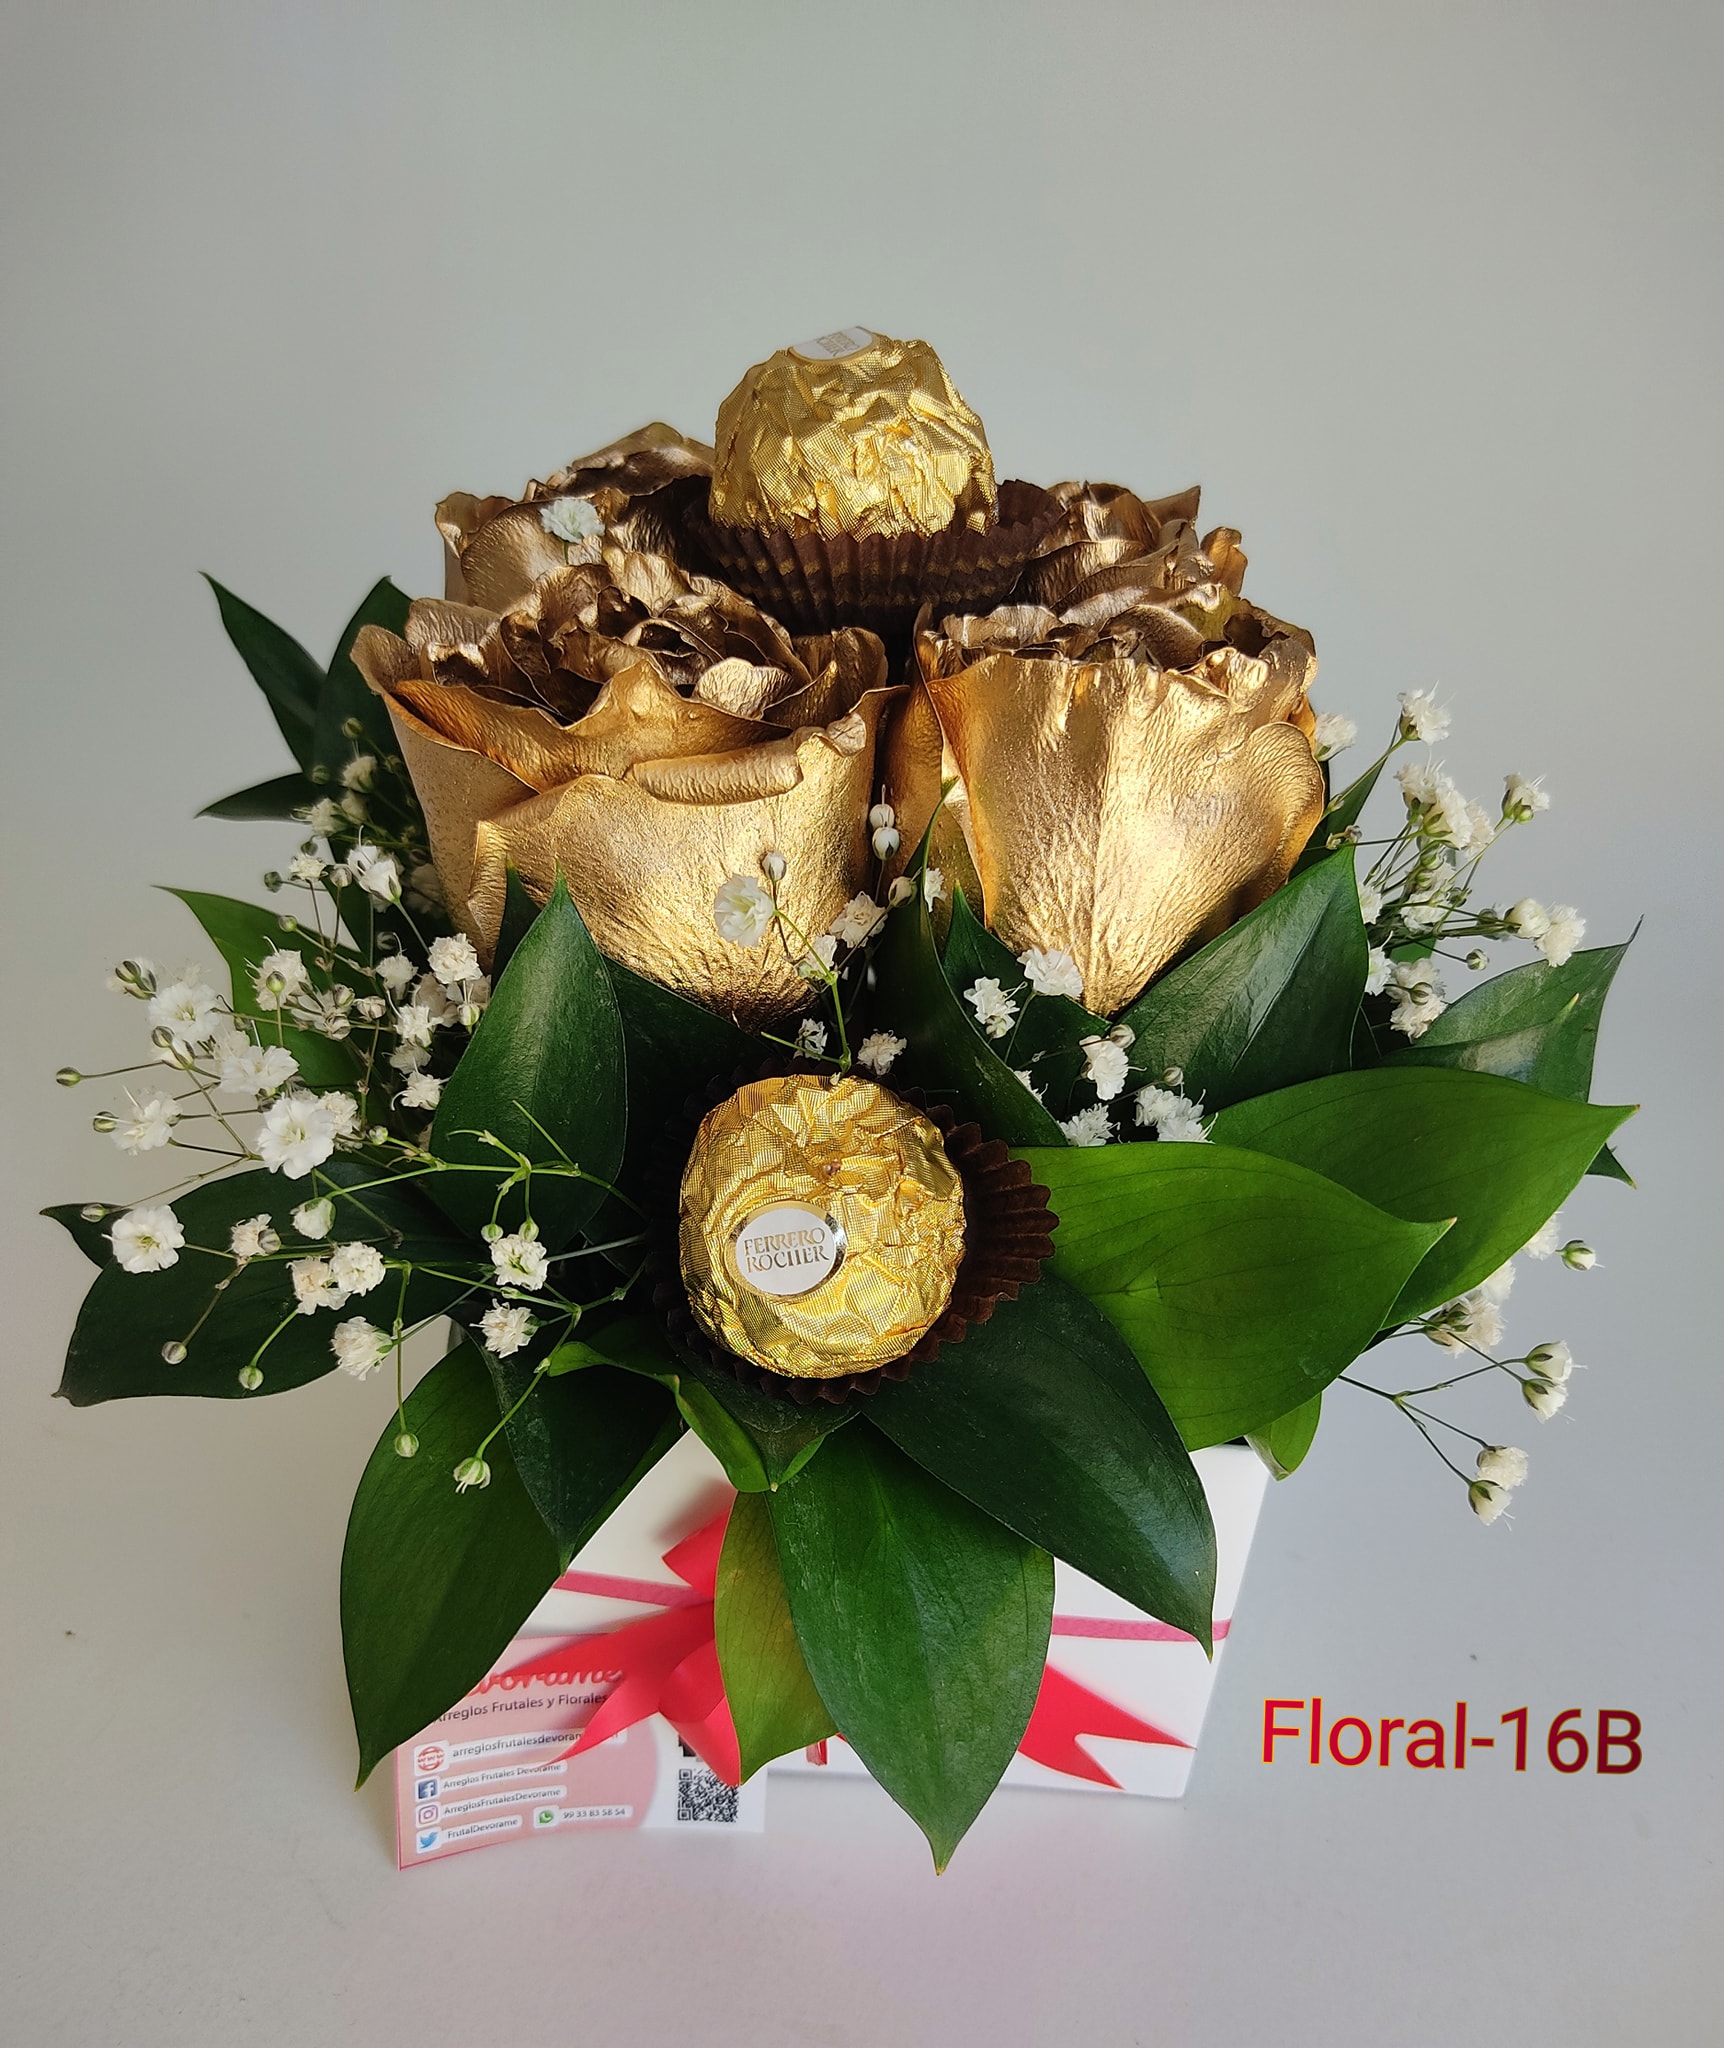 Arreglo frutal Floral-16B devorame